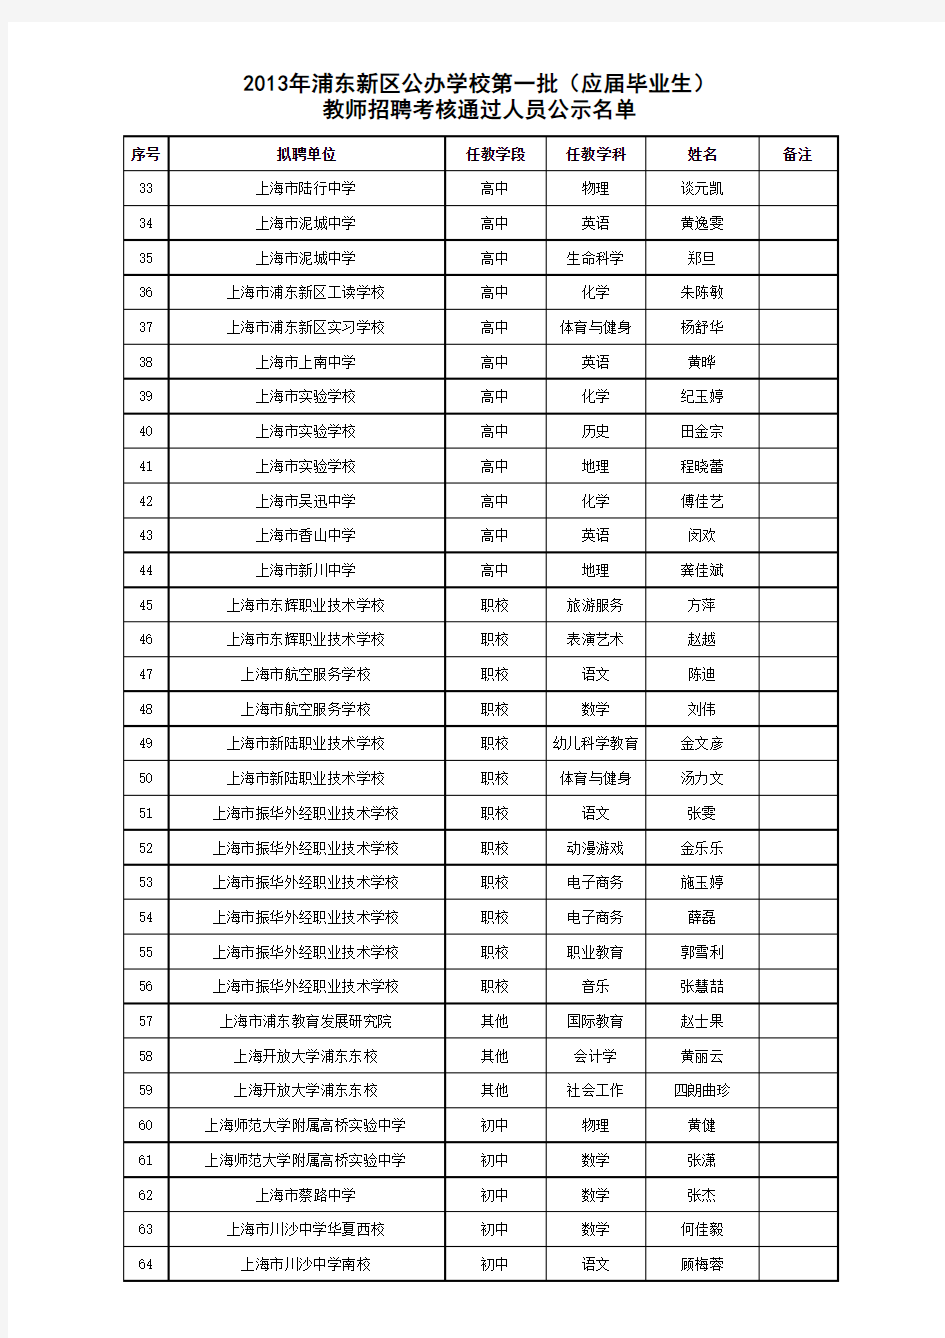 2013年浦东新区教师编制考(第一批)公示名单